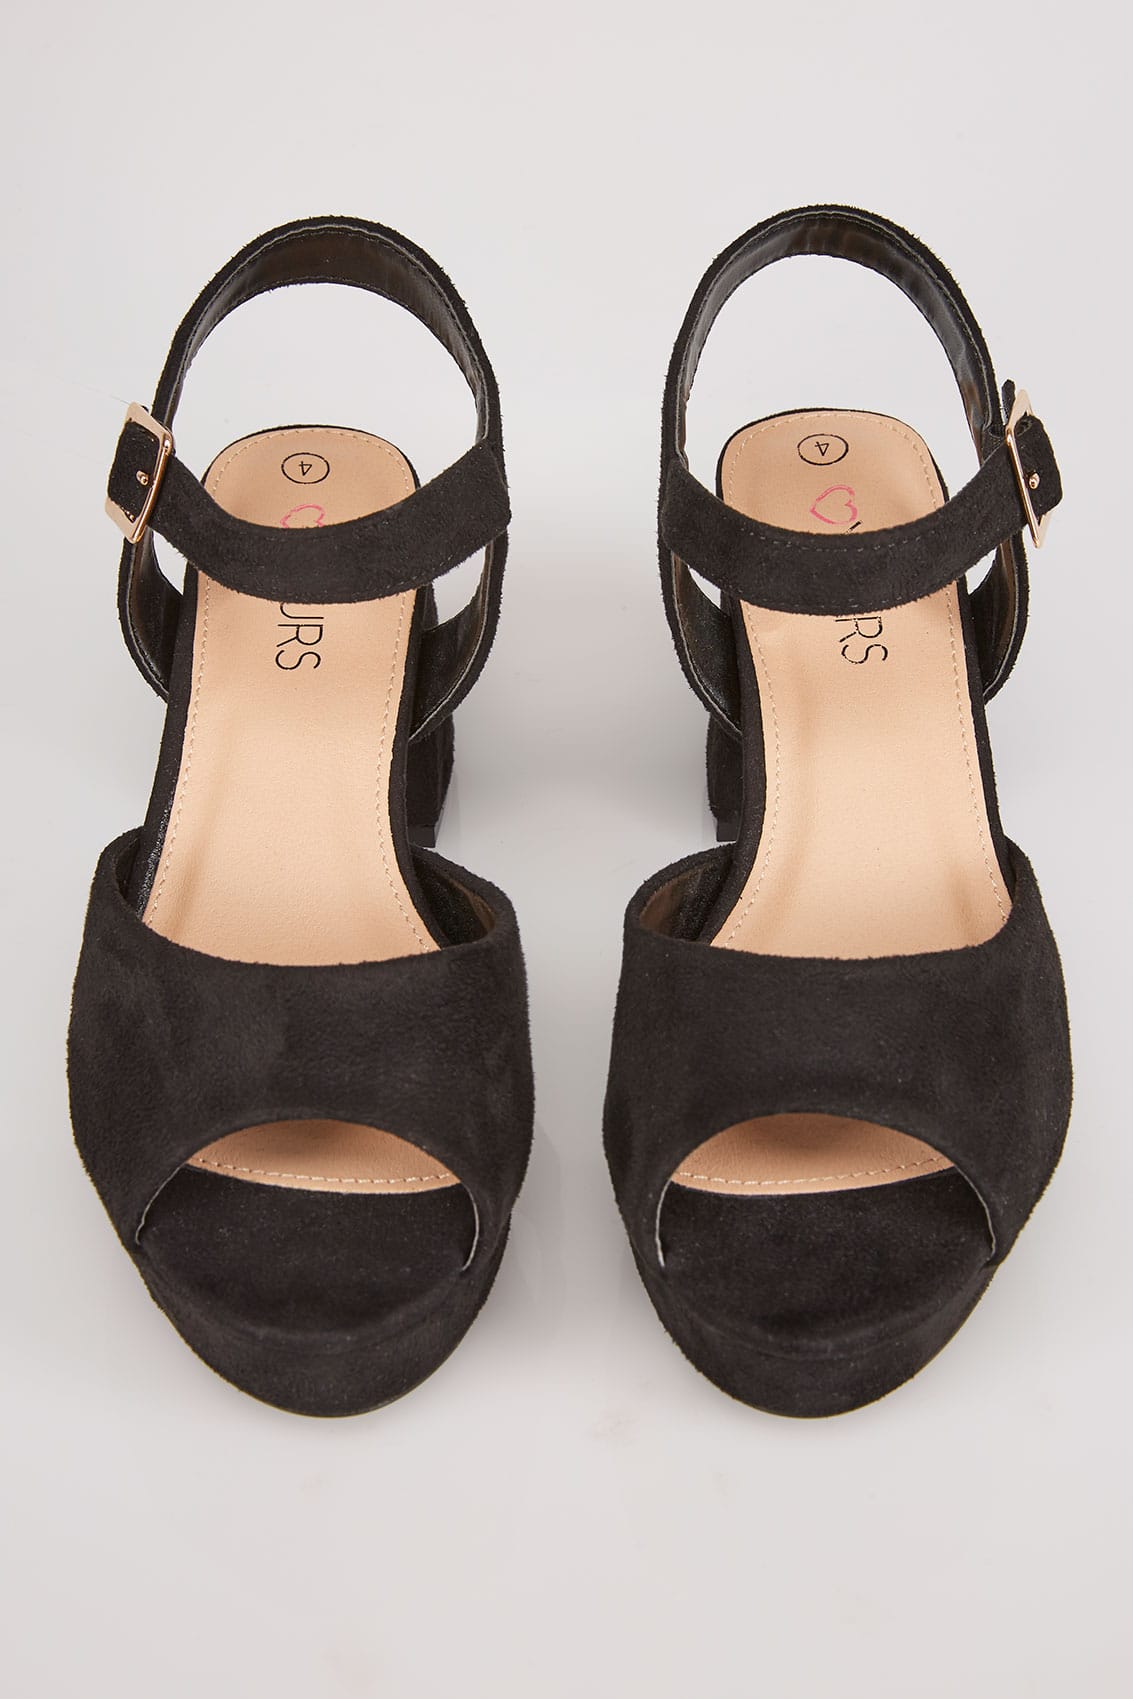 Black Platform Sandals With Block Heel In TRUE EEE Fit